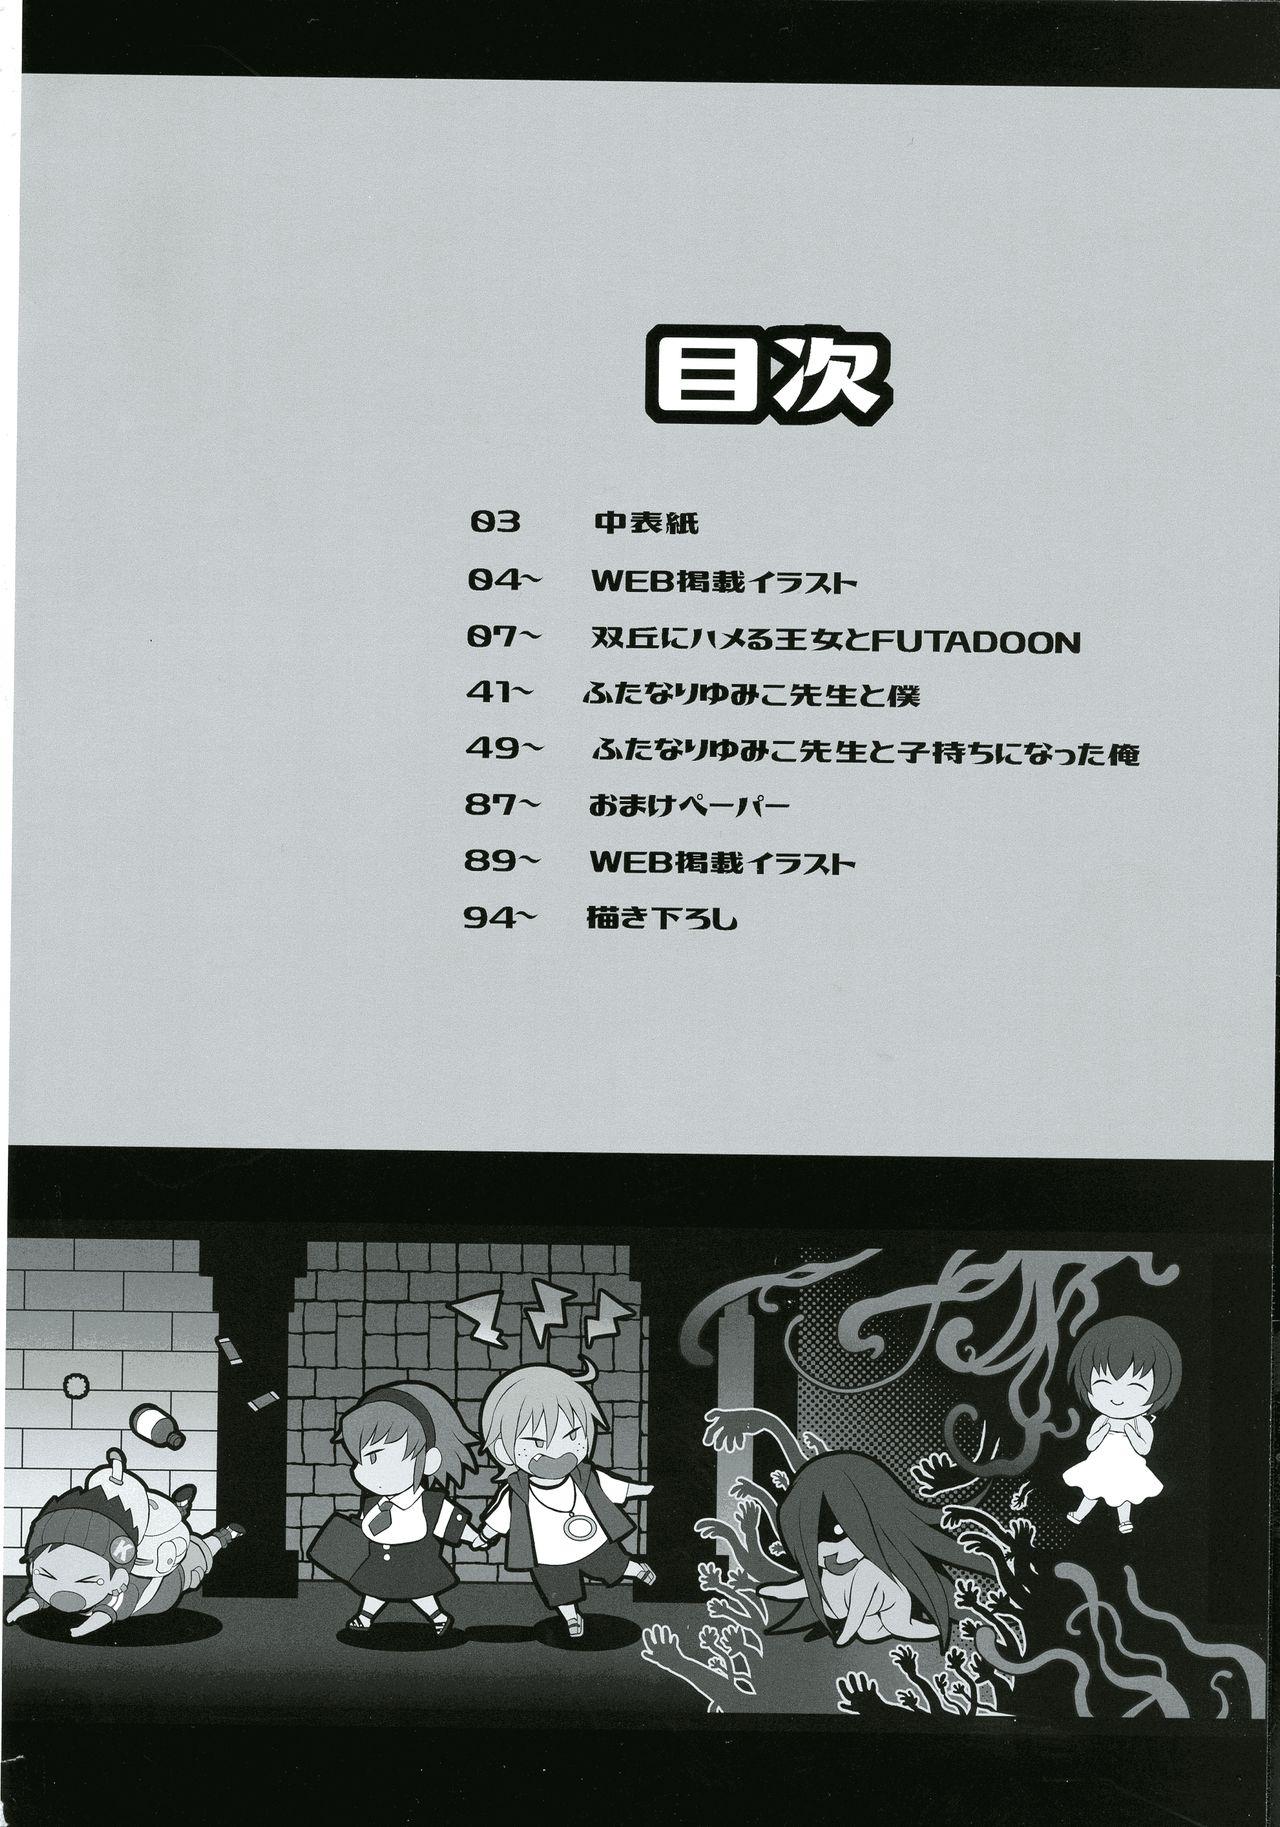 Story Futana Prin - Fukai ni nemuru oujo no abaddon Dando - Page 2